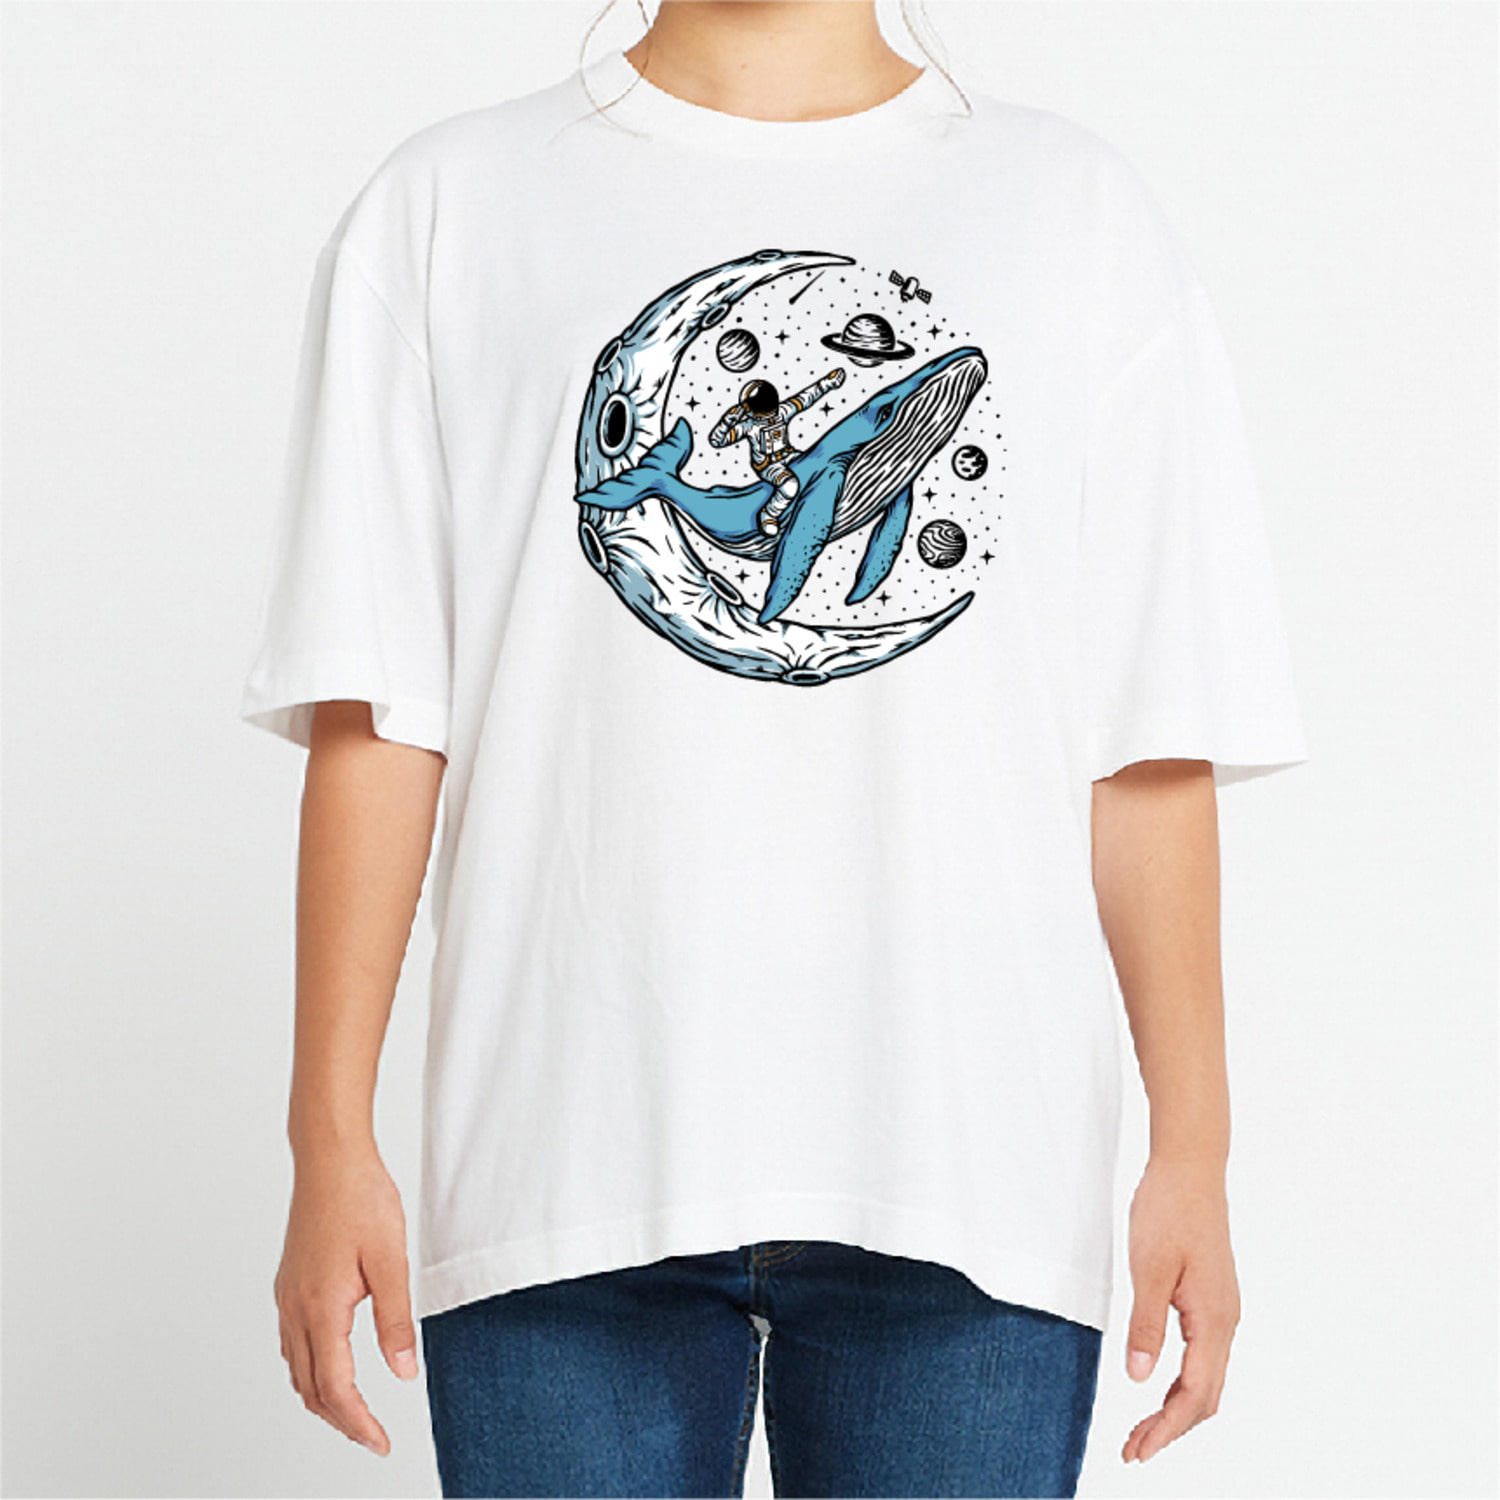 우주 행성 고래 그래픽 오버핏 티셔츠 animal.18